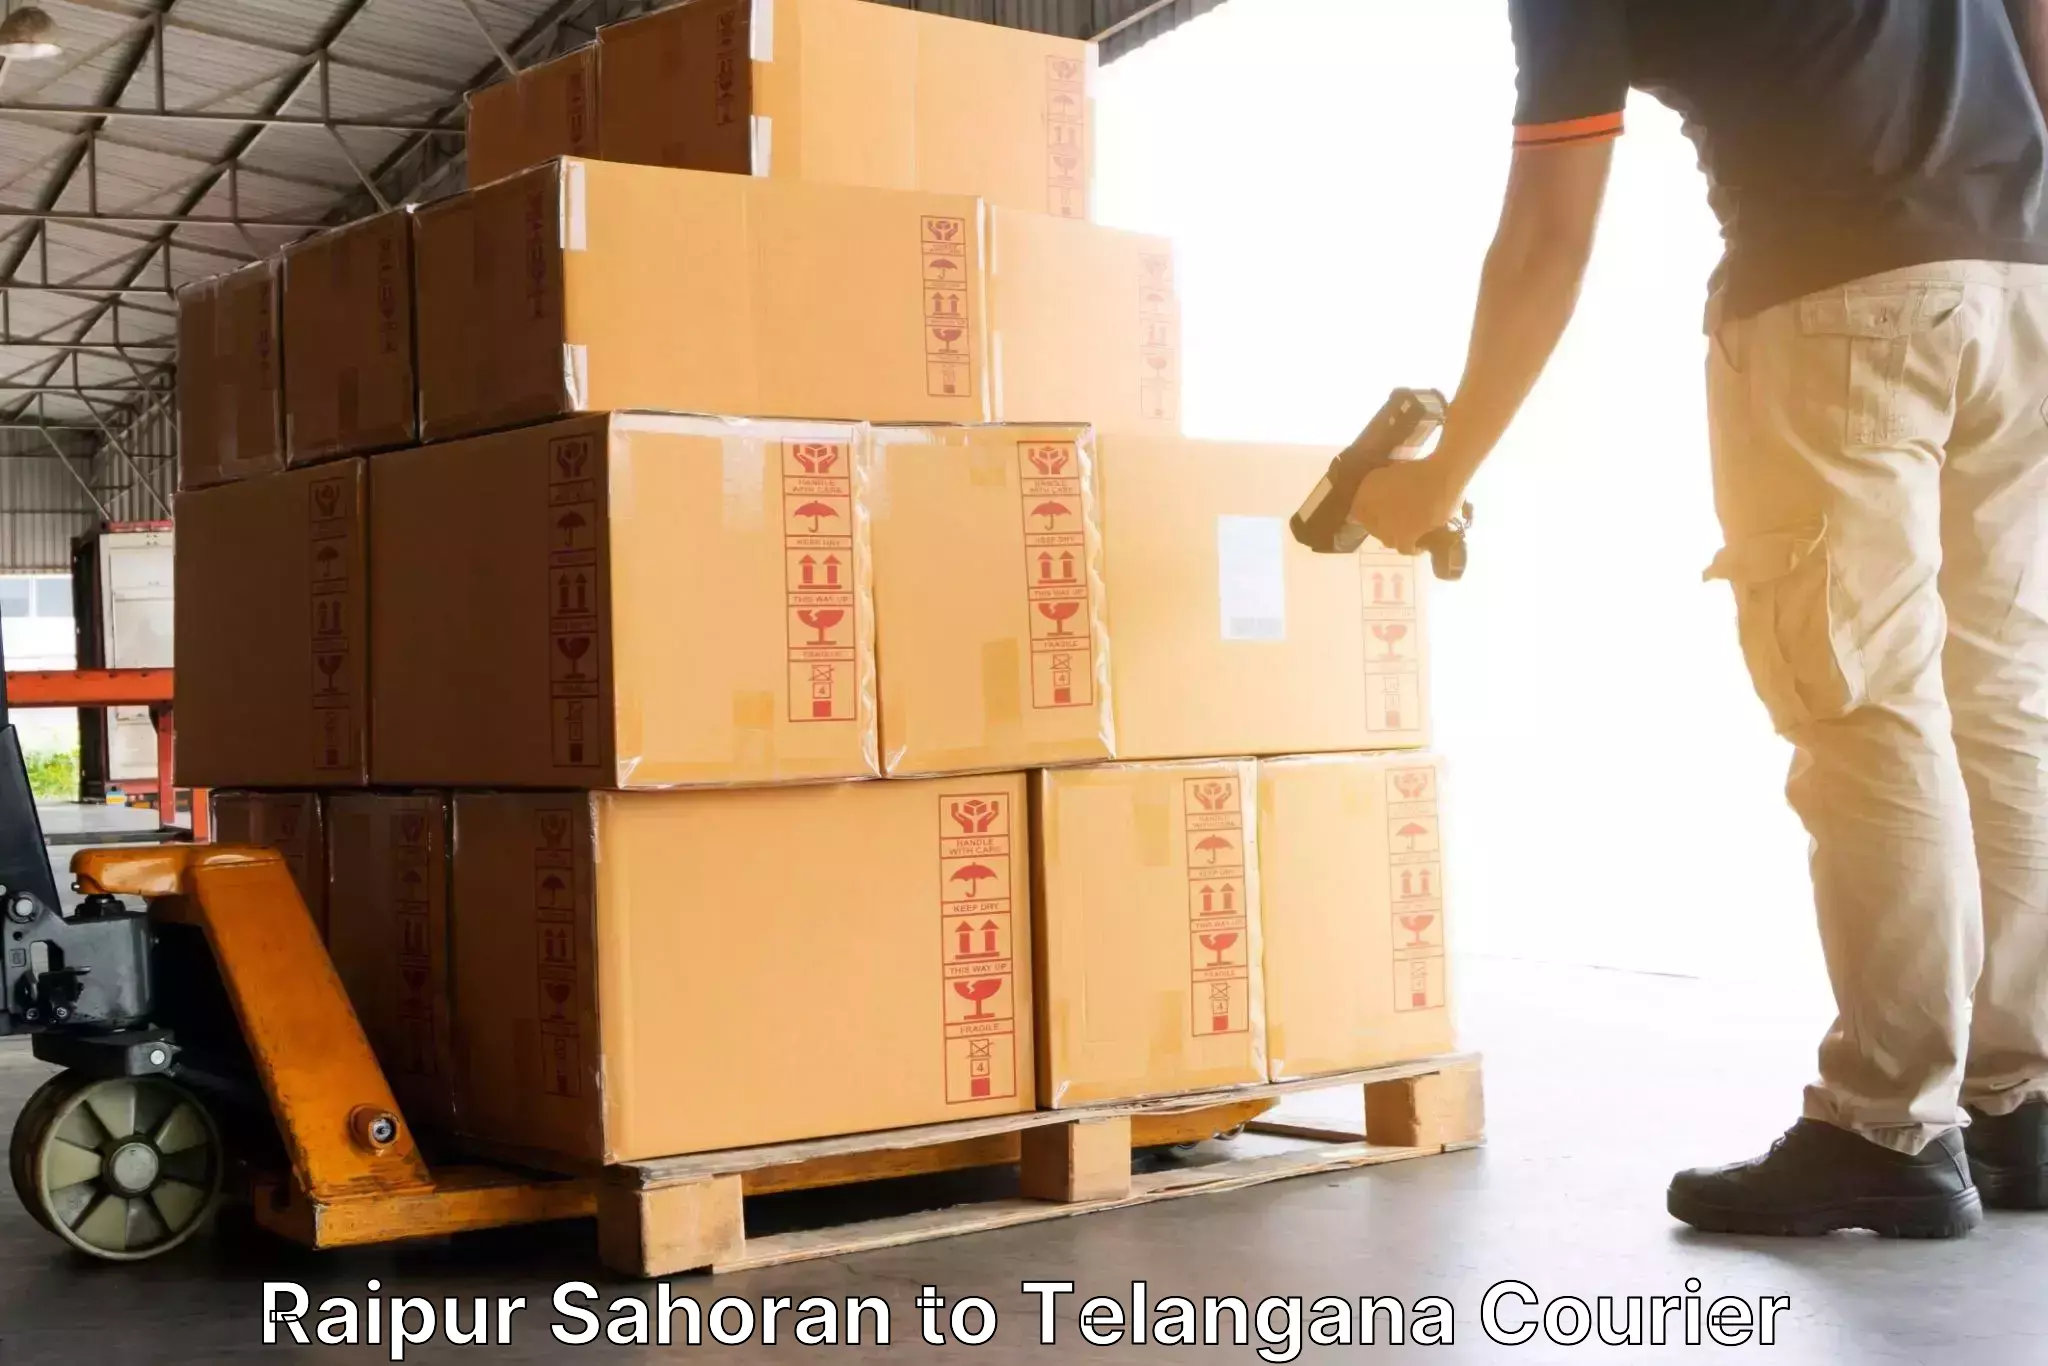 Tracking updates Raipur Sahoran to Telangana